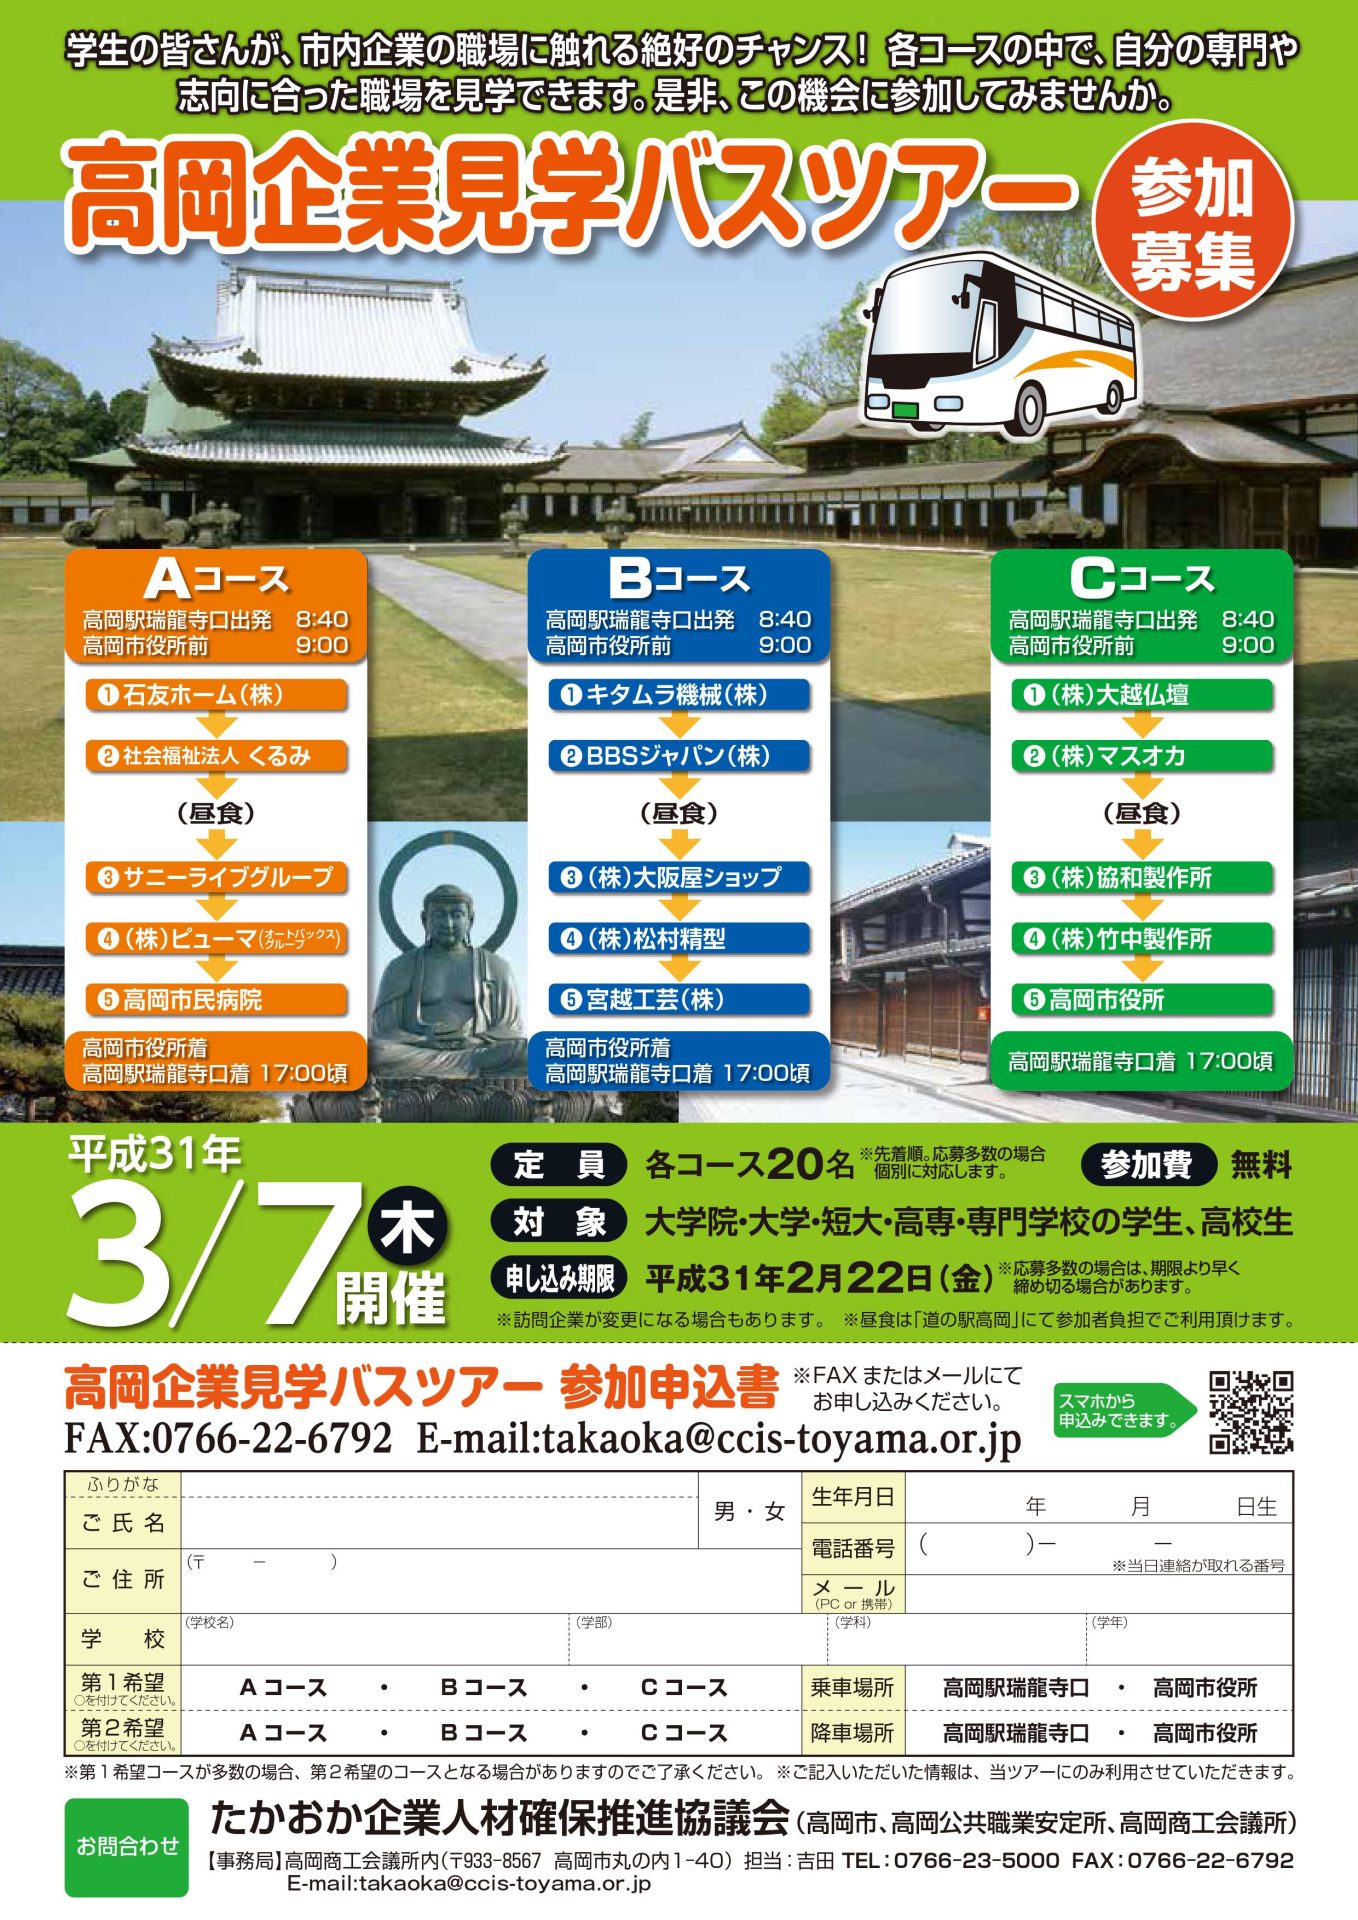 高岡企業見学バスツアーの開催！ 3月7日(木) | 移住関連イベント情報